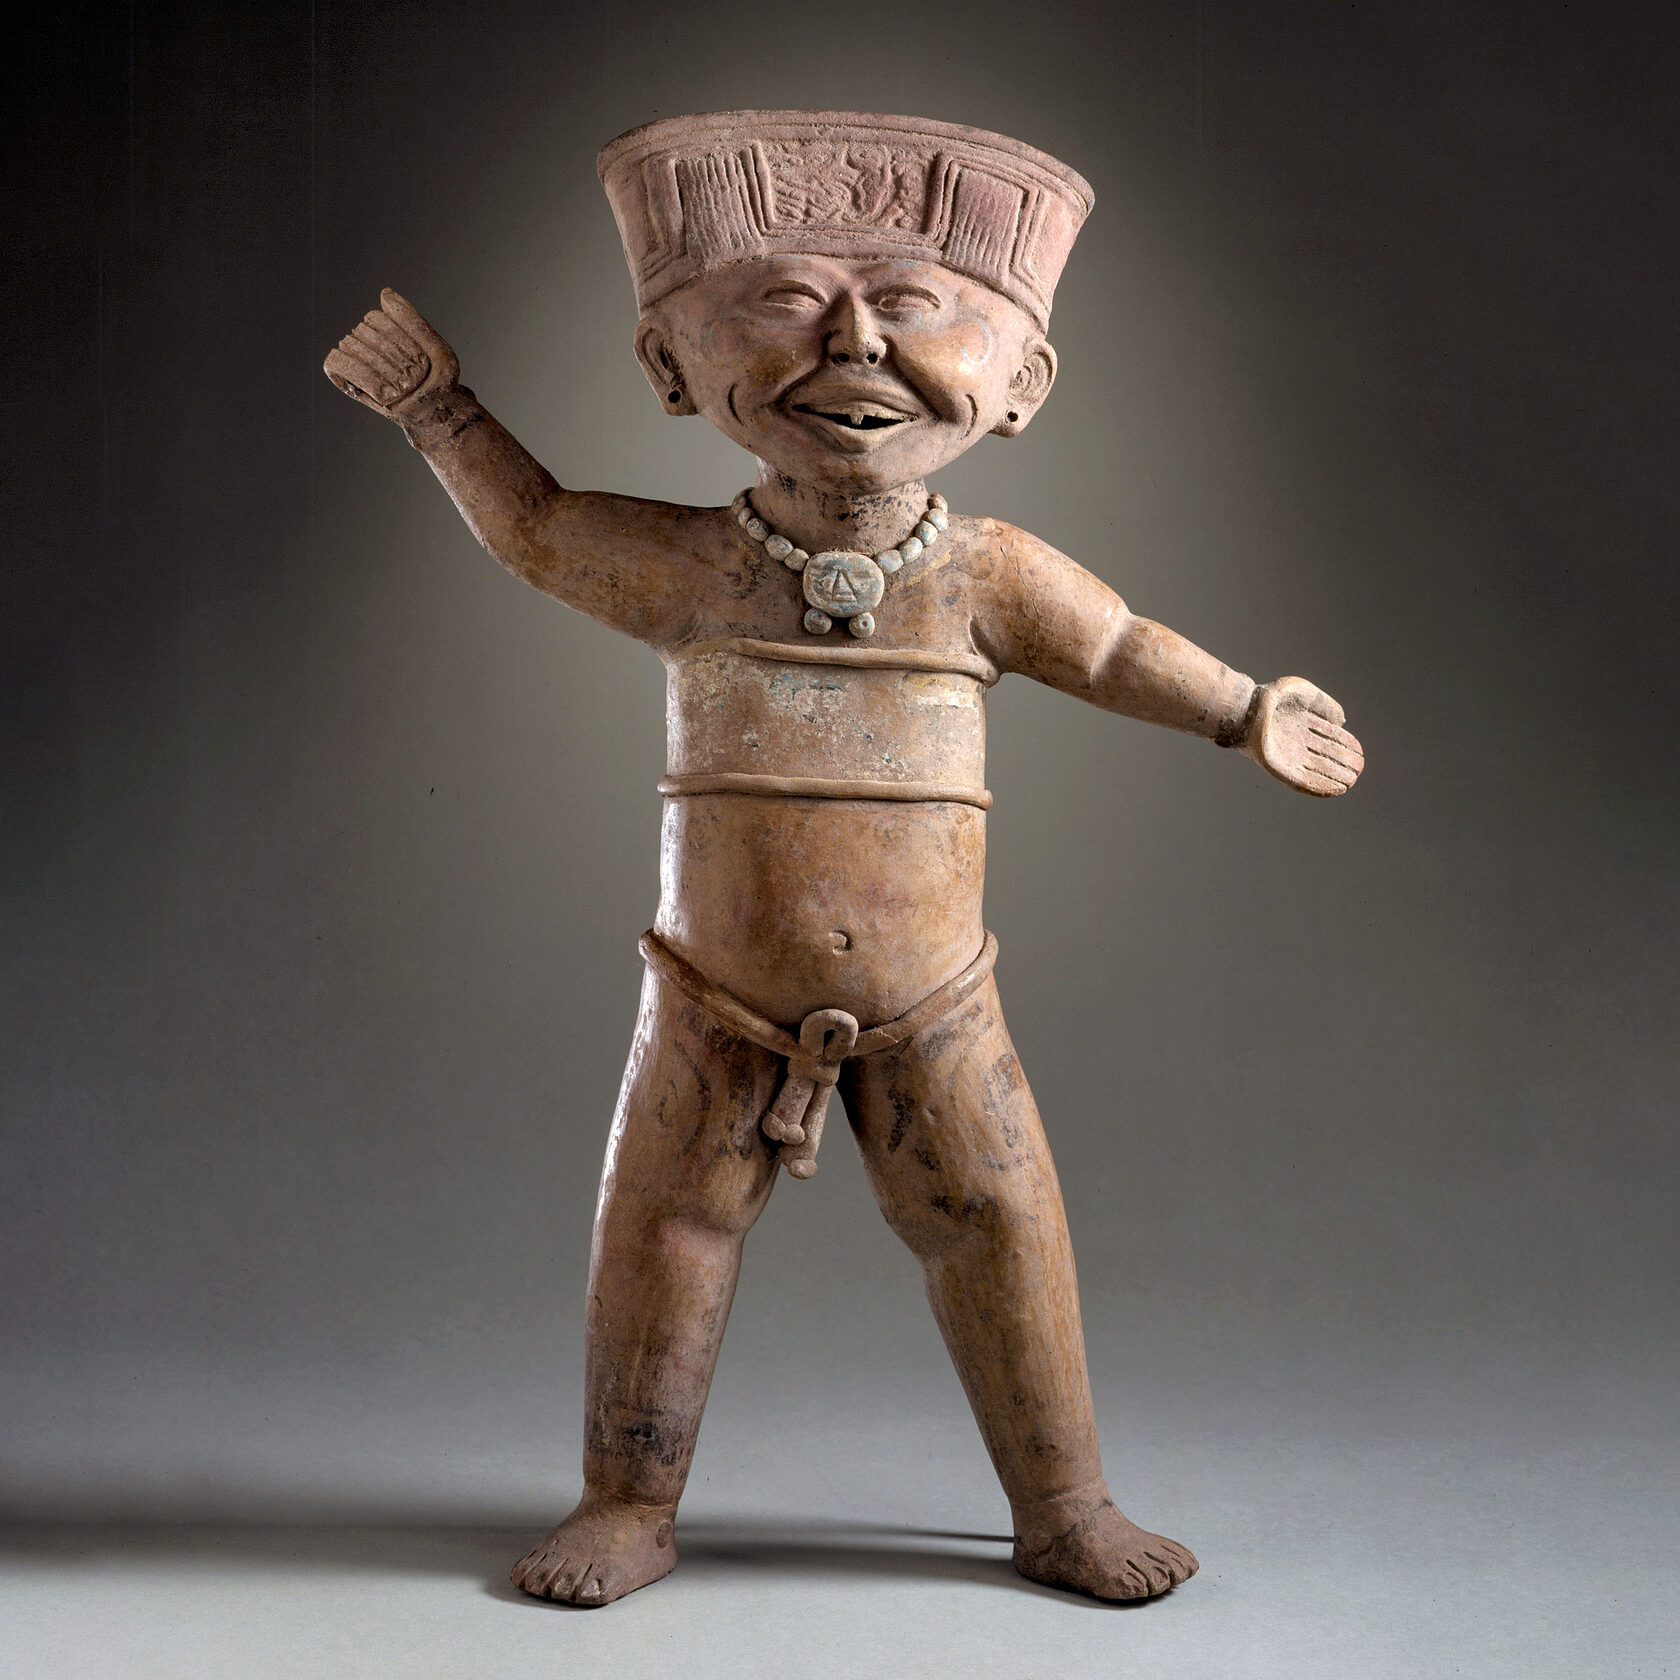 Мужчина, предположительно, в состоянии опьянения. Веракрус, 600-900 гг. н.э. Коллекция Los Angeles County Museum of Art.